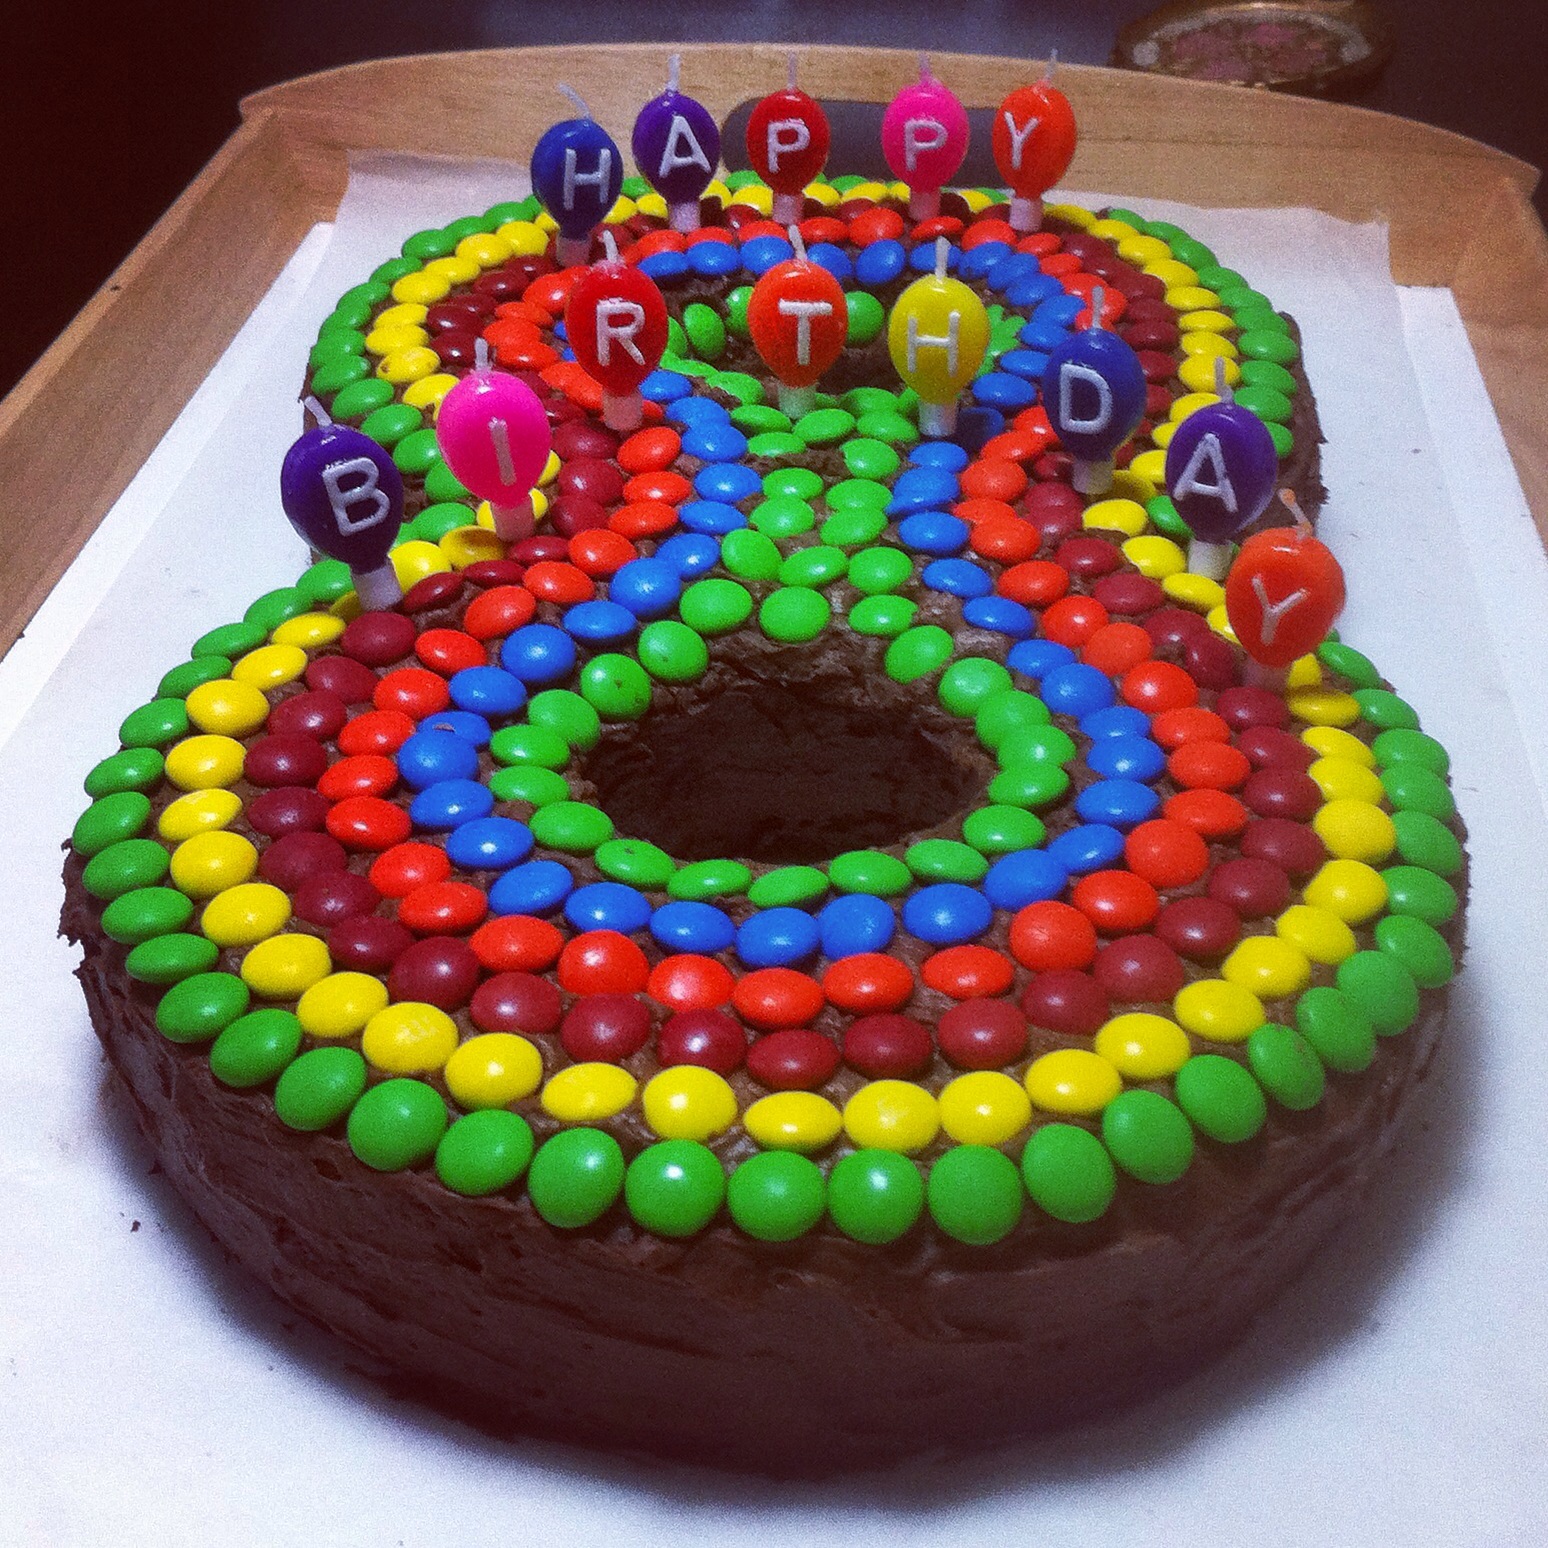 Happy cake-day! | Happy cake day, Happy birthday cakes, Happy birthday  pictures